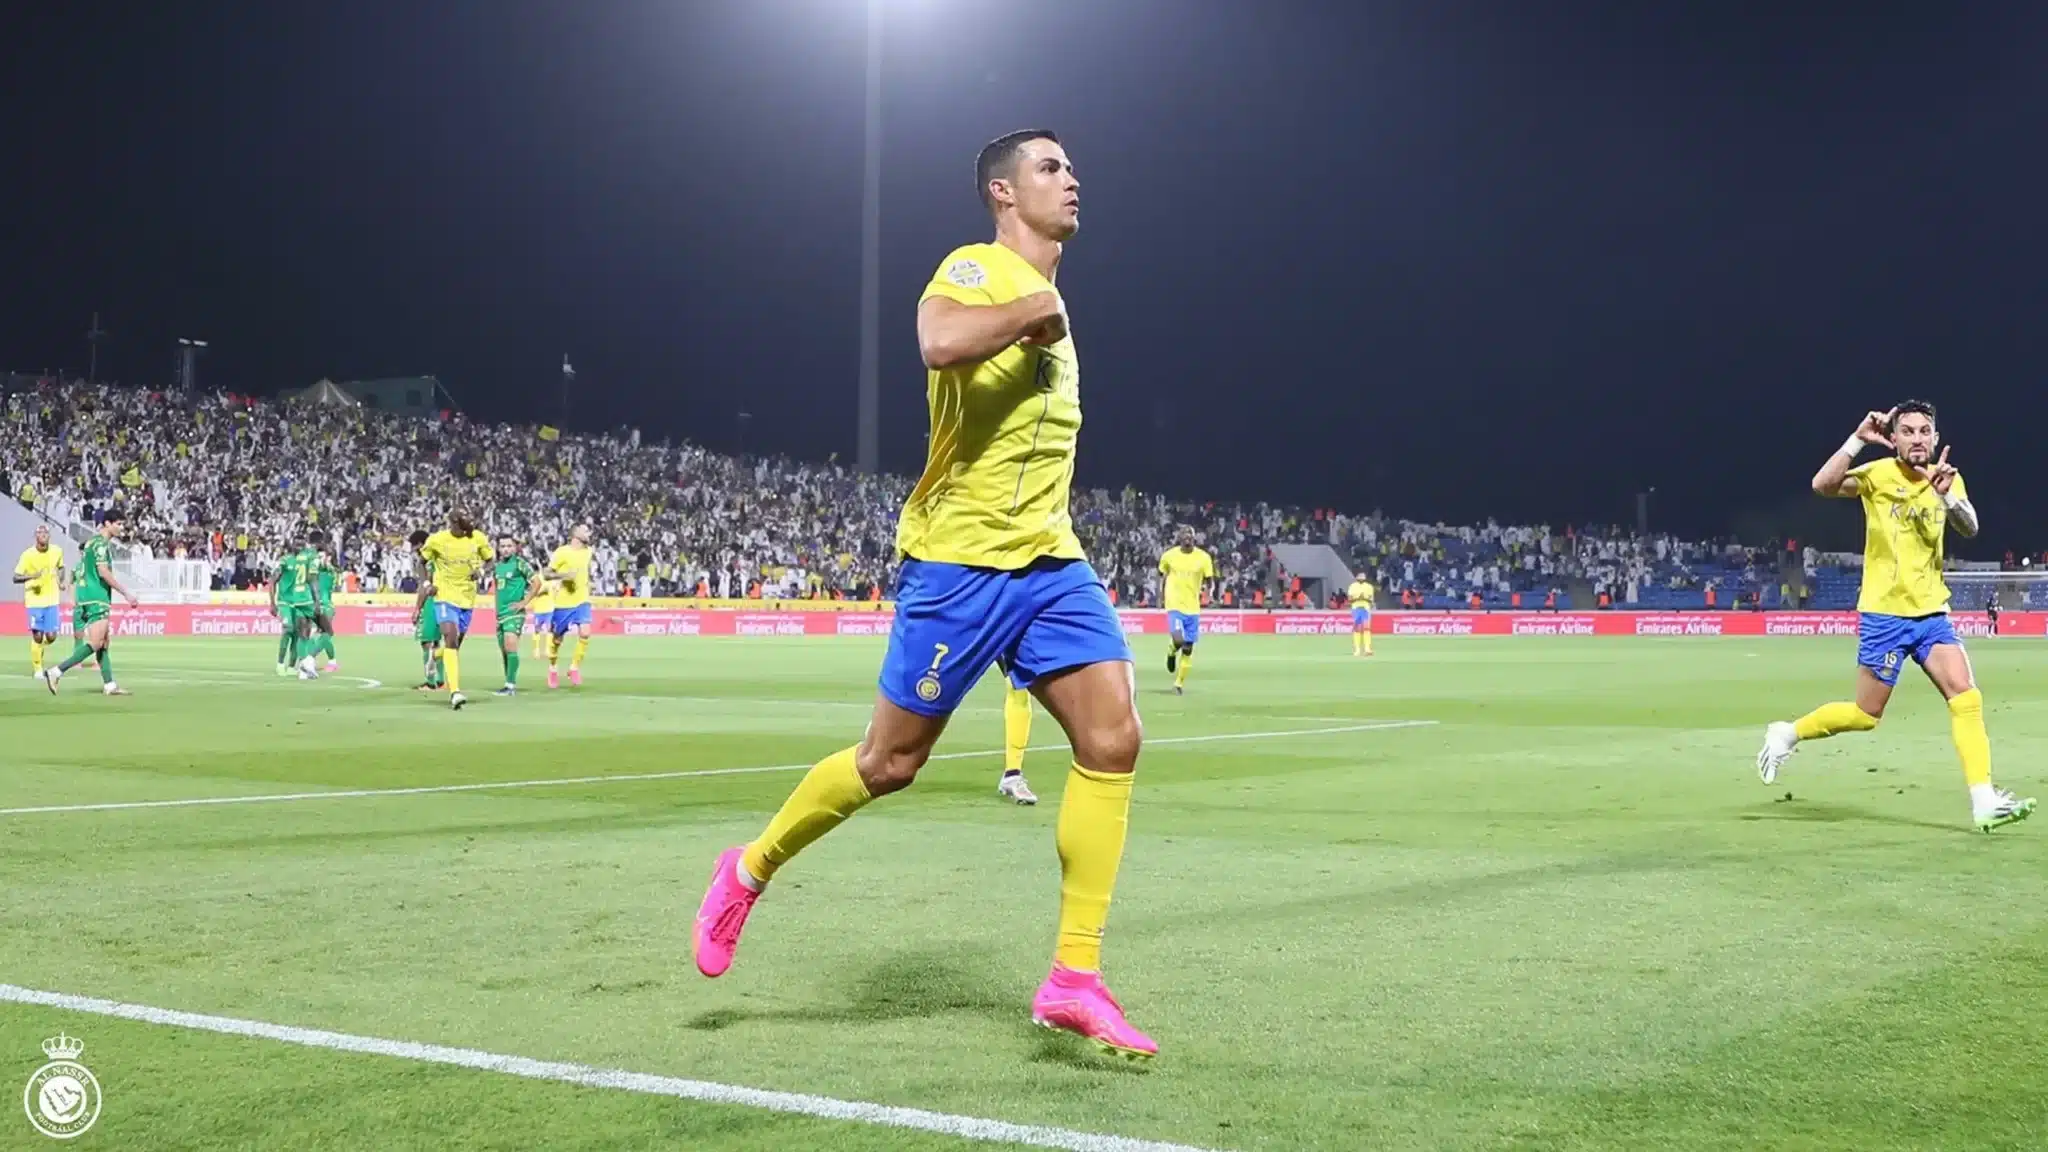 Cristiano Ronaldo s’élève au-dessus de tous pour marquer un deuxième but aérien sensationnel (vidéo)